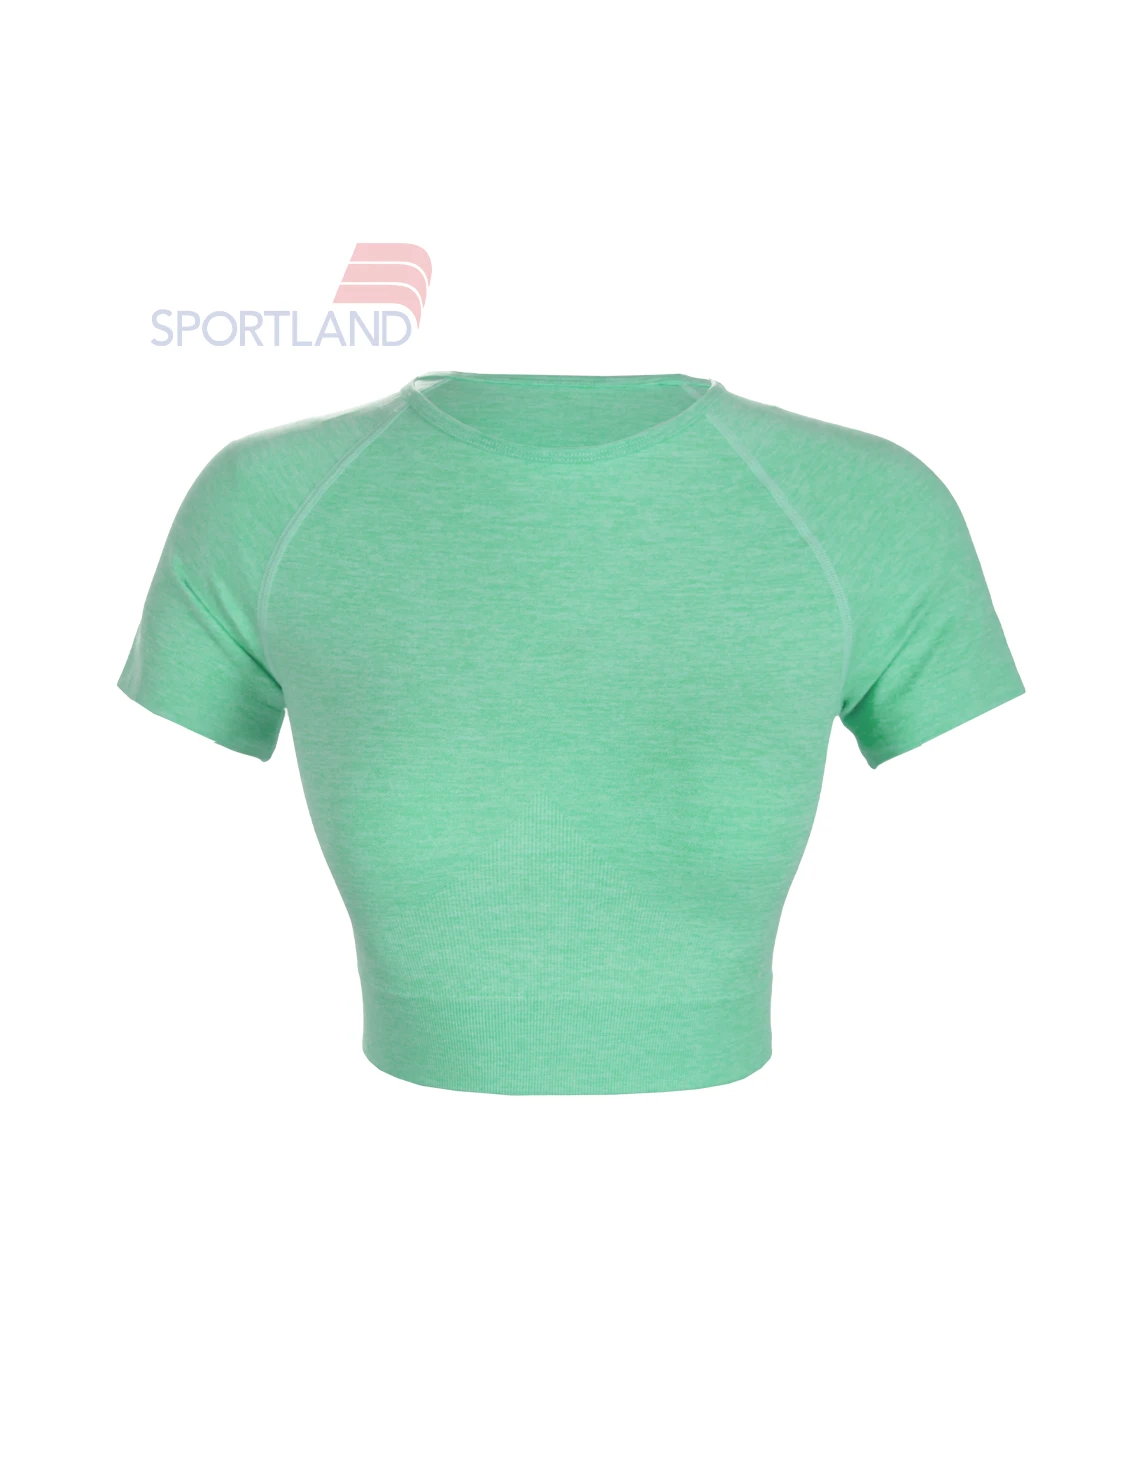 تی شرت ورزشی زنانه اسپورتلند Florentina W